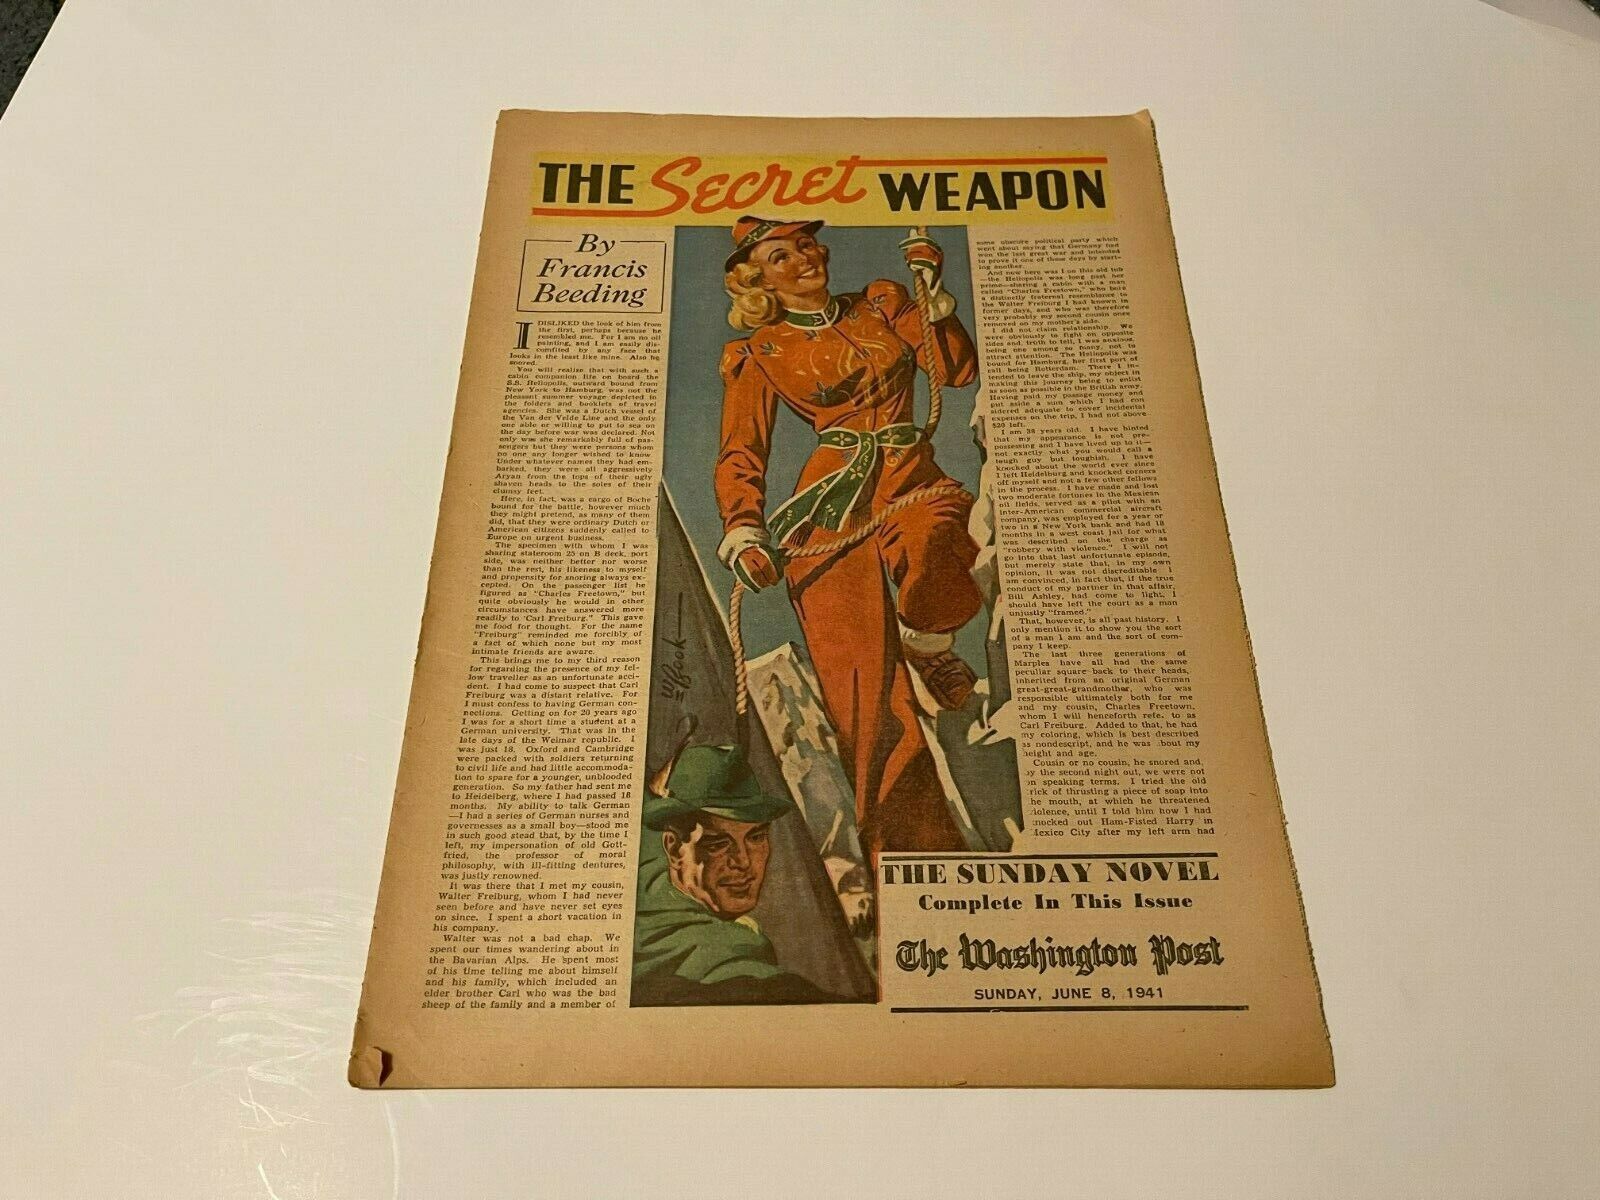 THE SECRET WEAPON, 1941 washington post sunday novel, FRANCIS BEEDING,JUNE 8